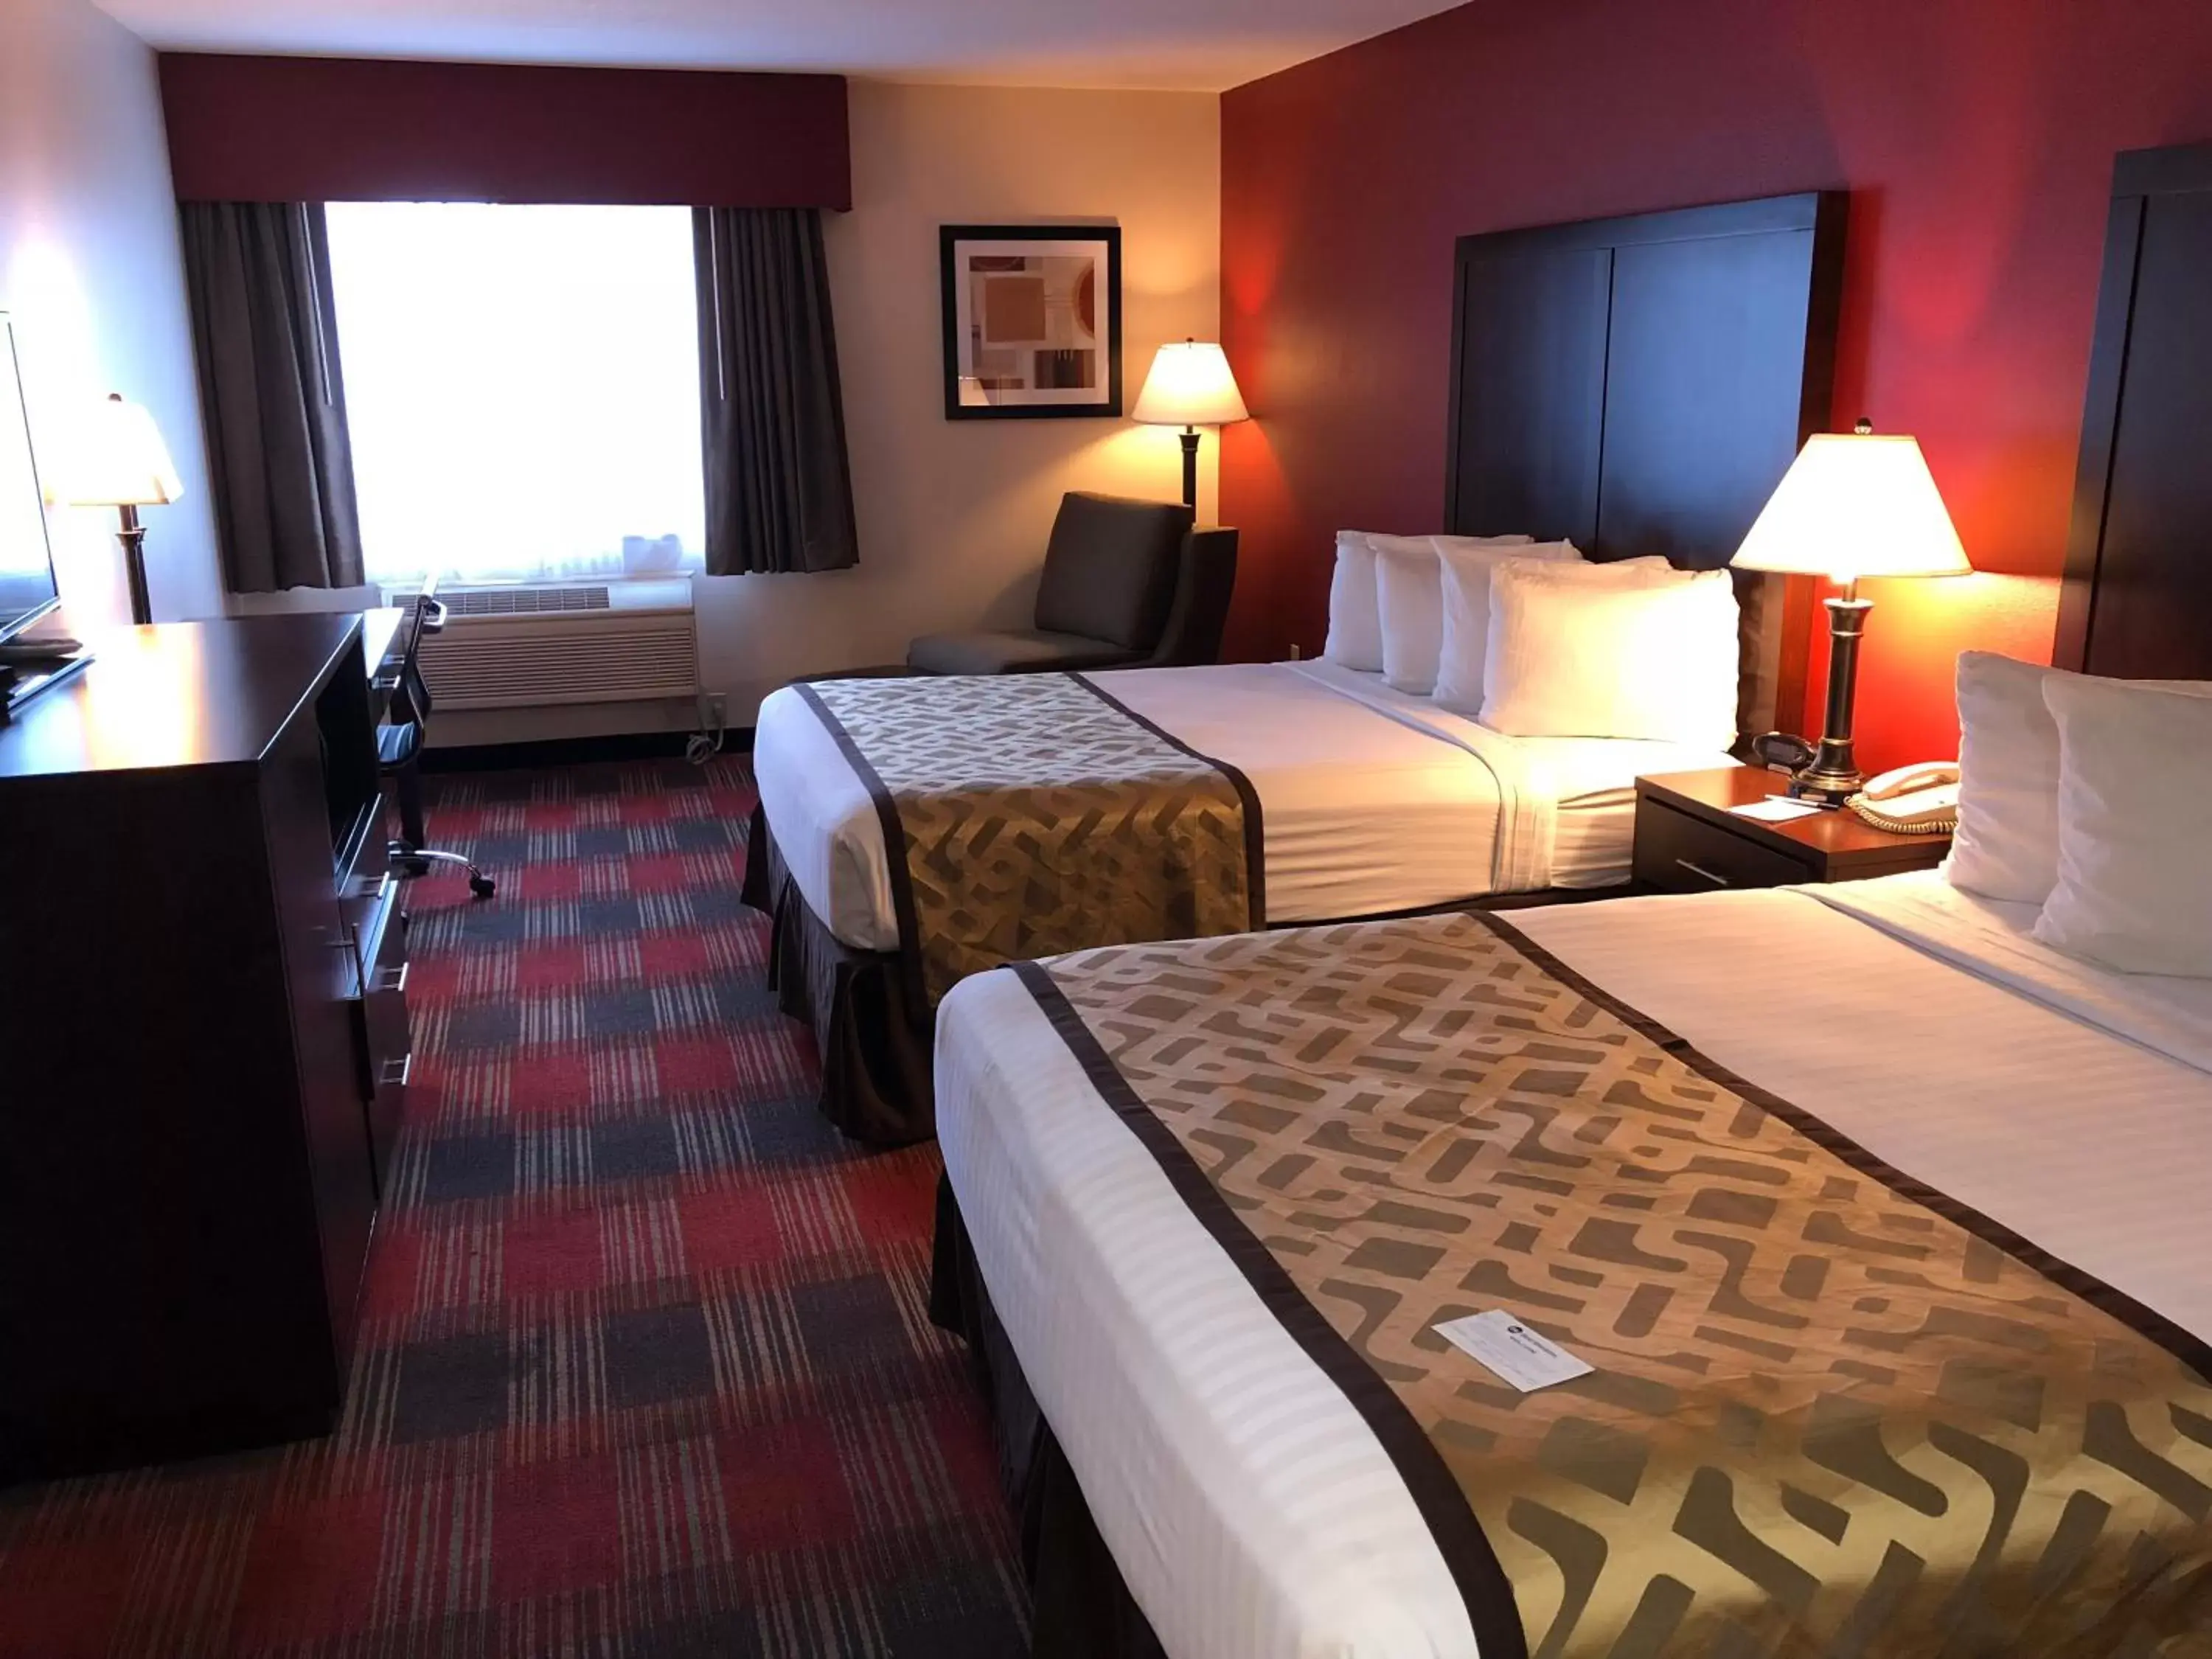 Bedroom, Bed in Best Western Dallas Inn & Suites